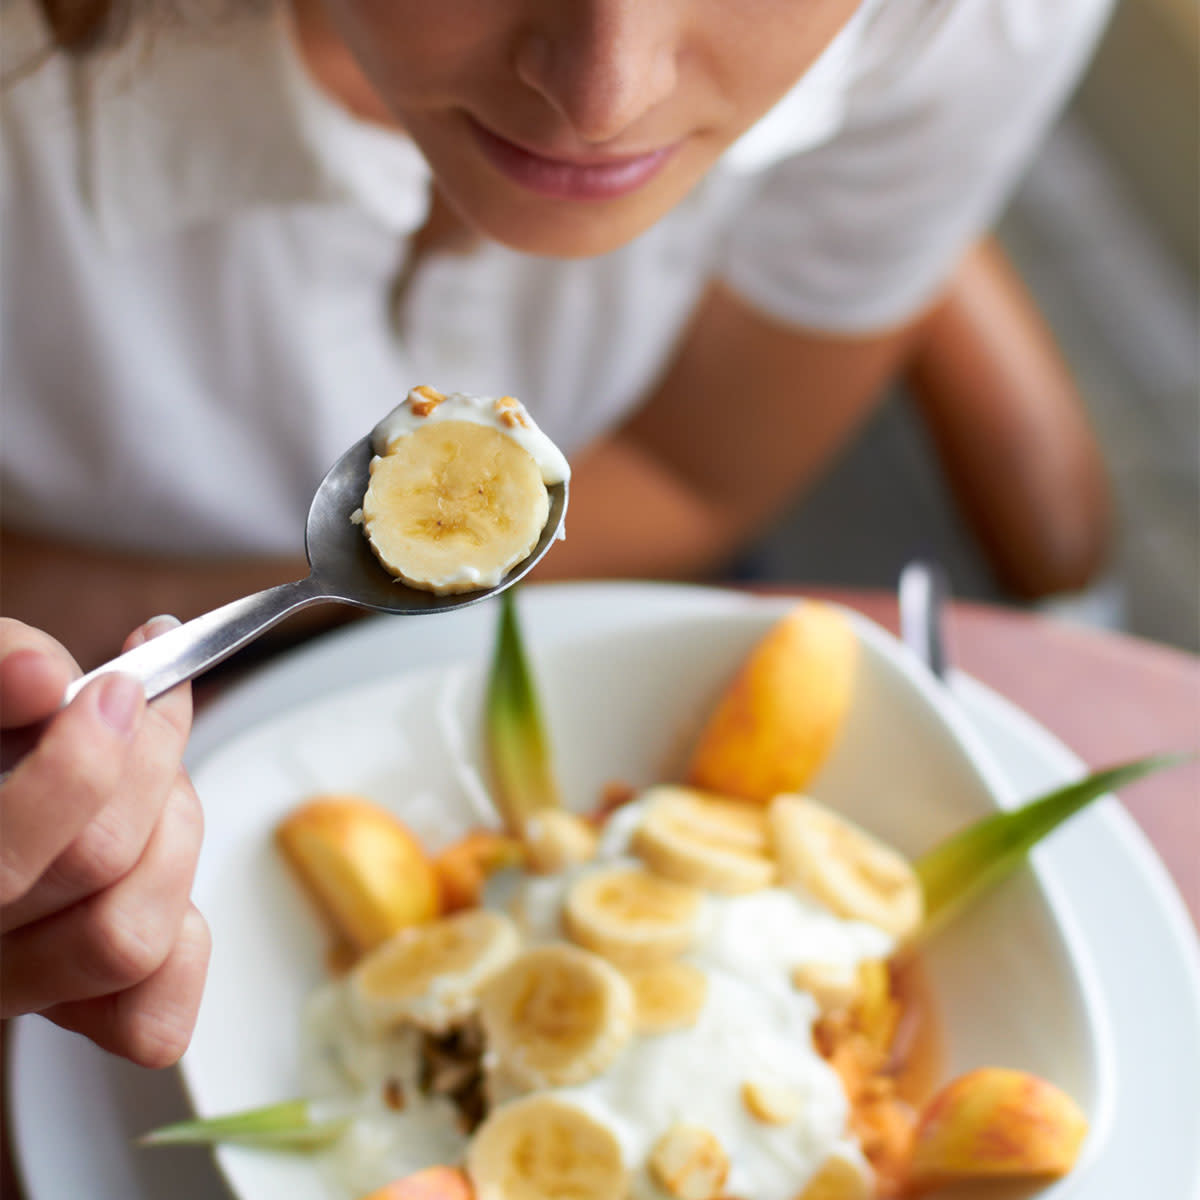 woman eating a bowl of banana fruit with yogurt